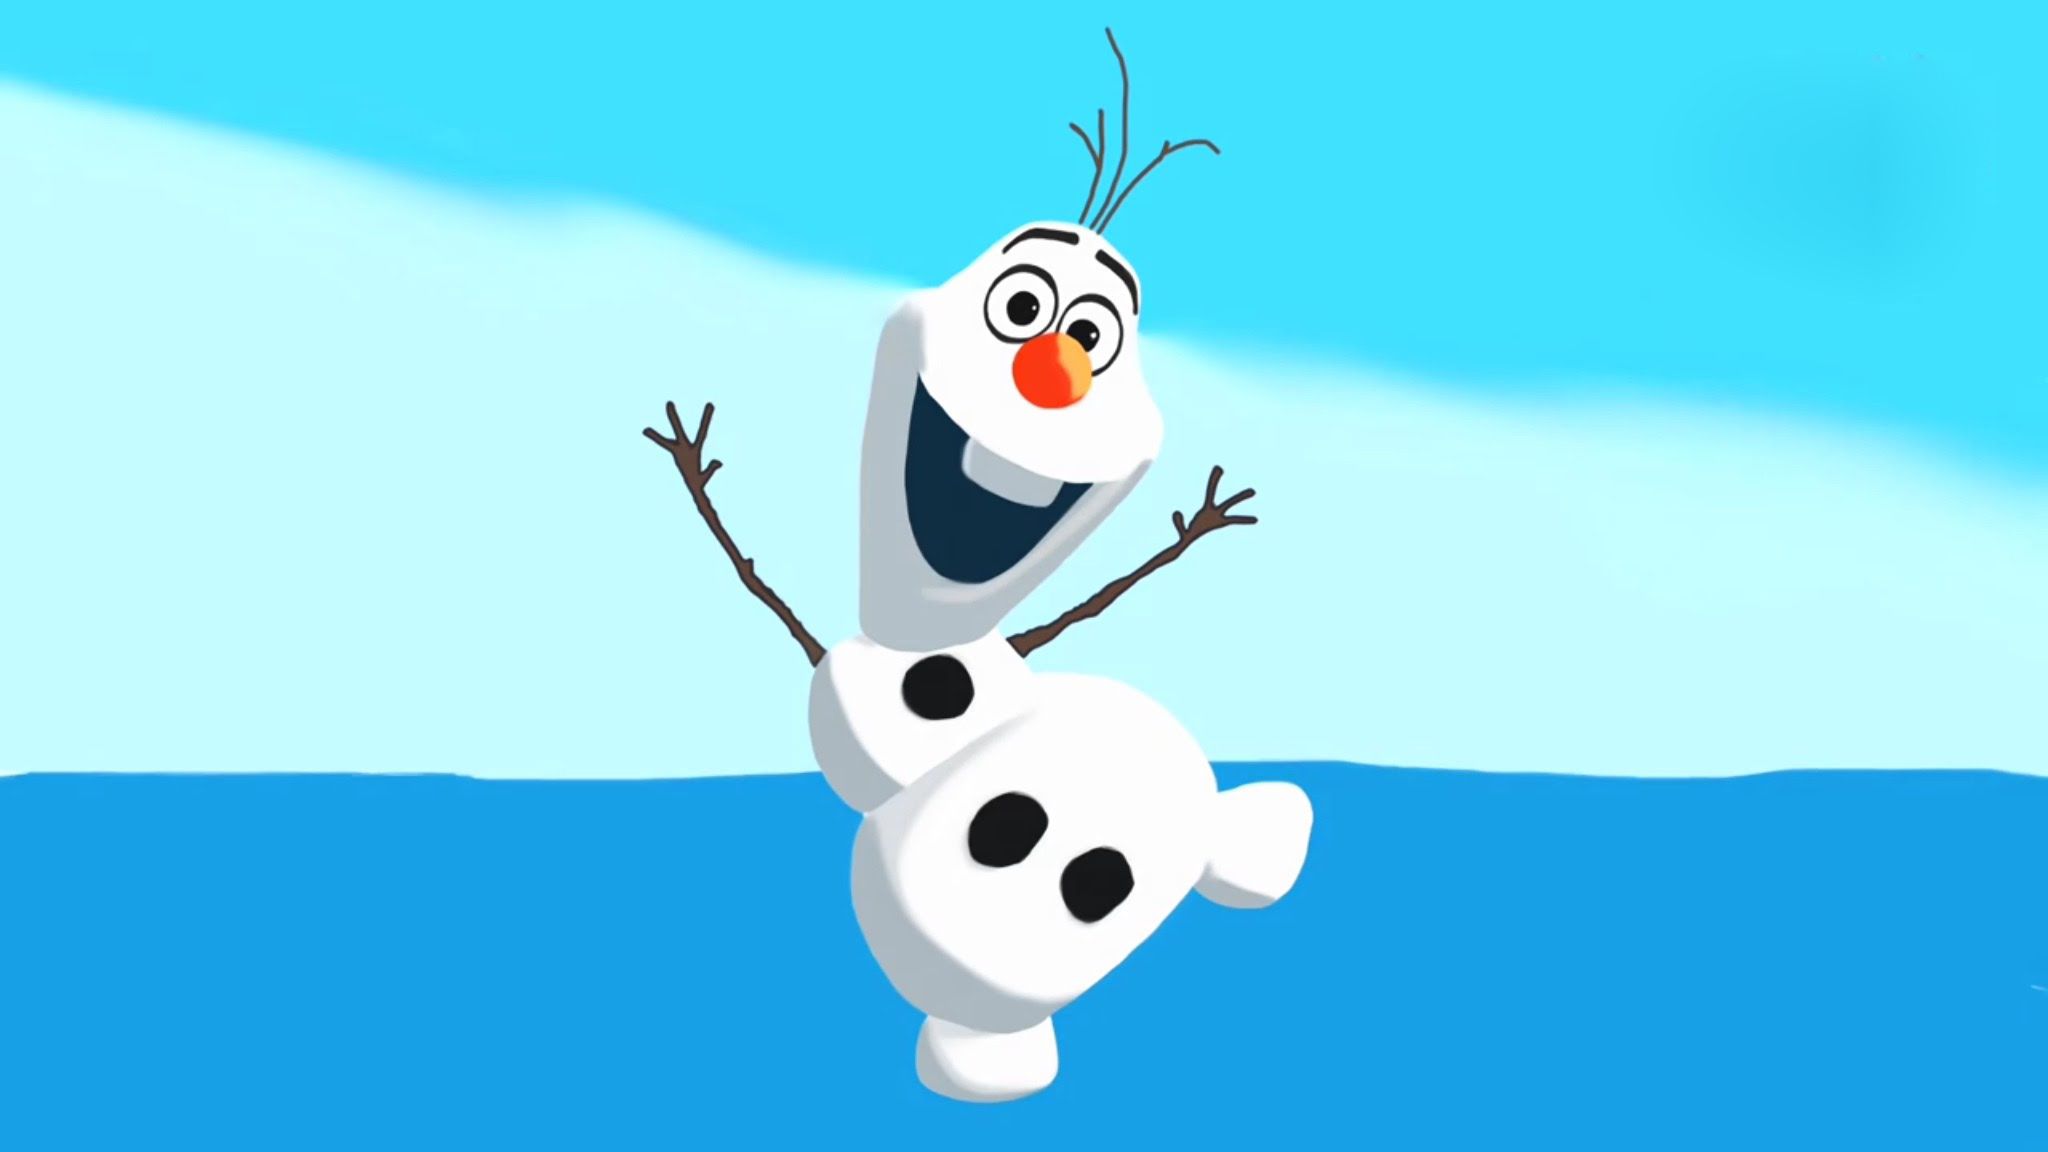 Olaf The Snowman Cartoon.